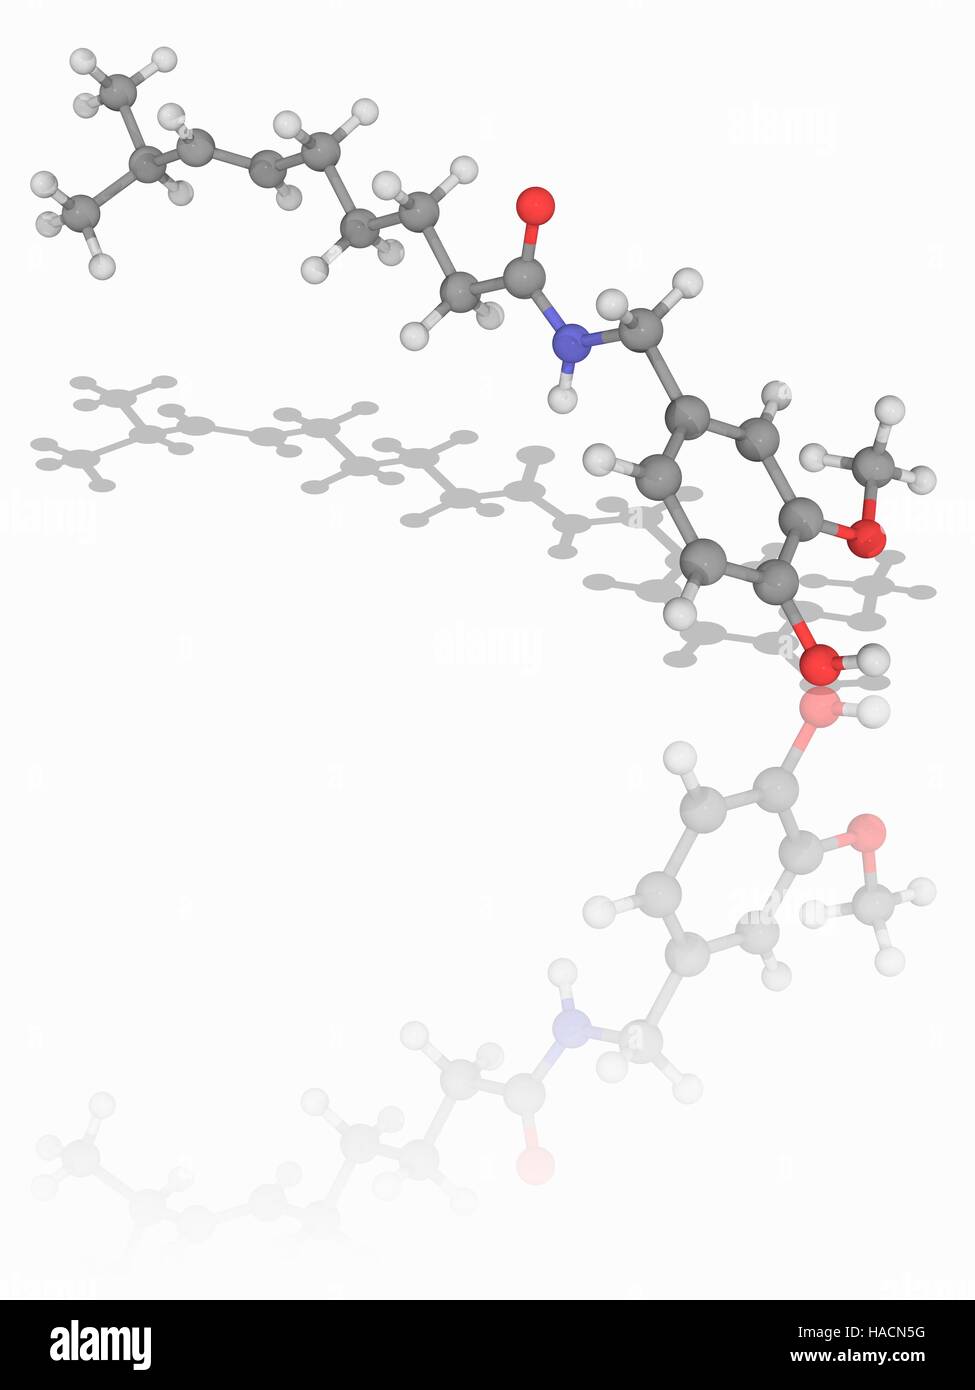 Capsaicin. Molekulares Modell des Amid Capsaicin (C18. H27. N.O3), Paprika die aktive Komponente der Chili-Paprika. Atome als Kugeln dargestellt werden und sind farblich gekennzeichnet: Kohlenstoff (grau), Wasserstoff (weiß), Stickstoff (blau) und Sauerstoff (rot). Abbildung. Stockfoto